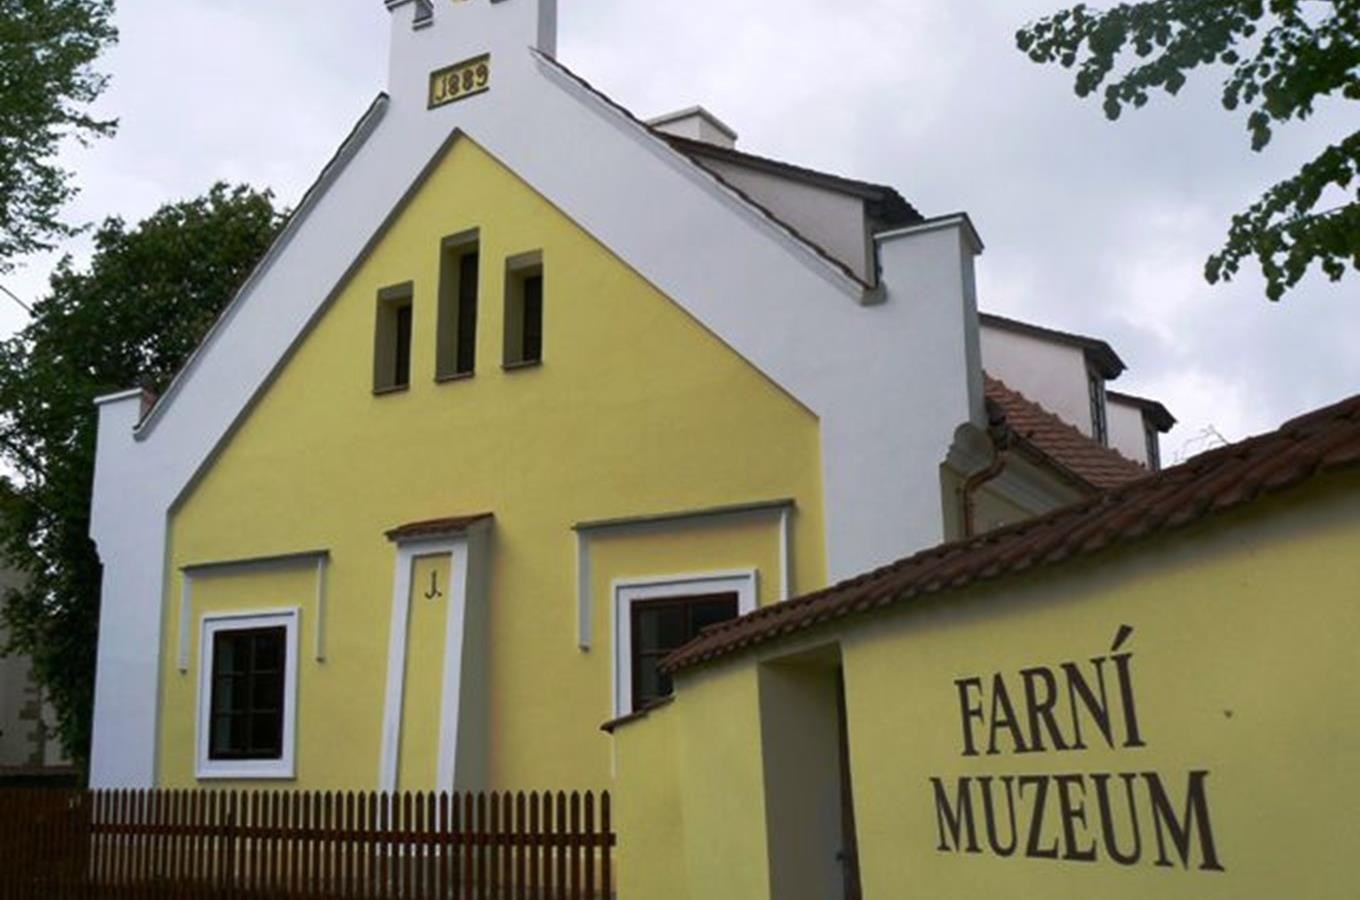 Farní muzeum v Kondraci